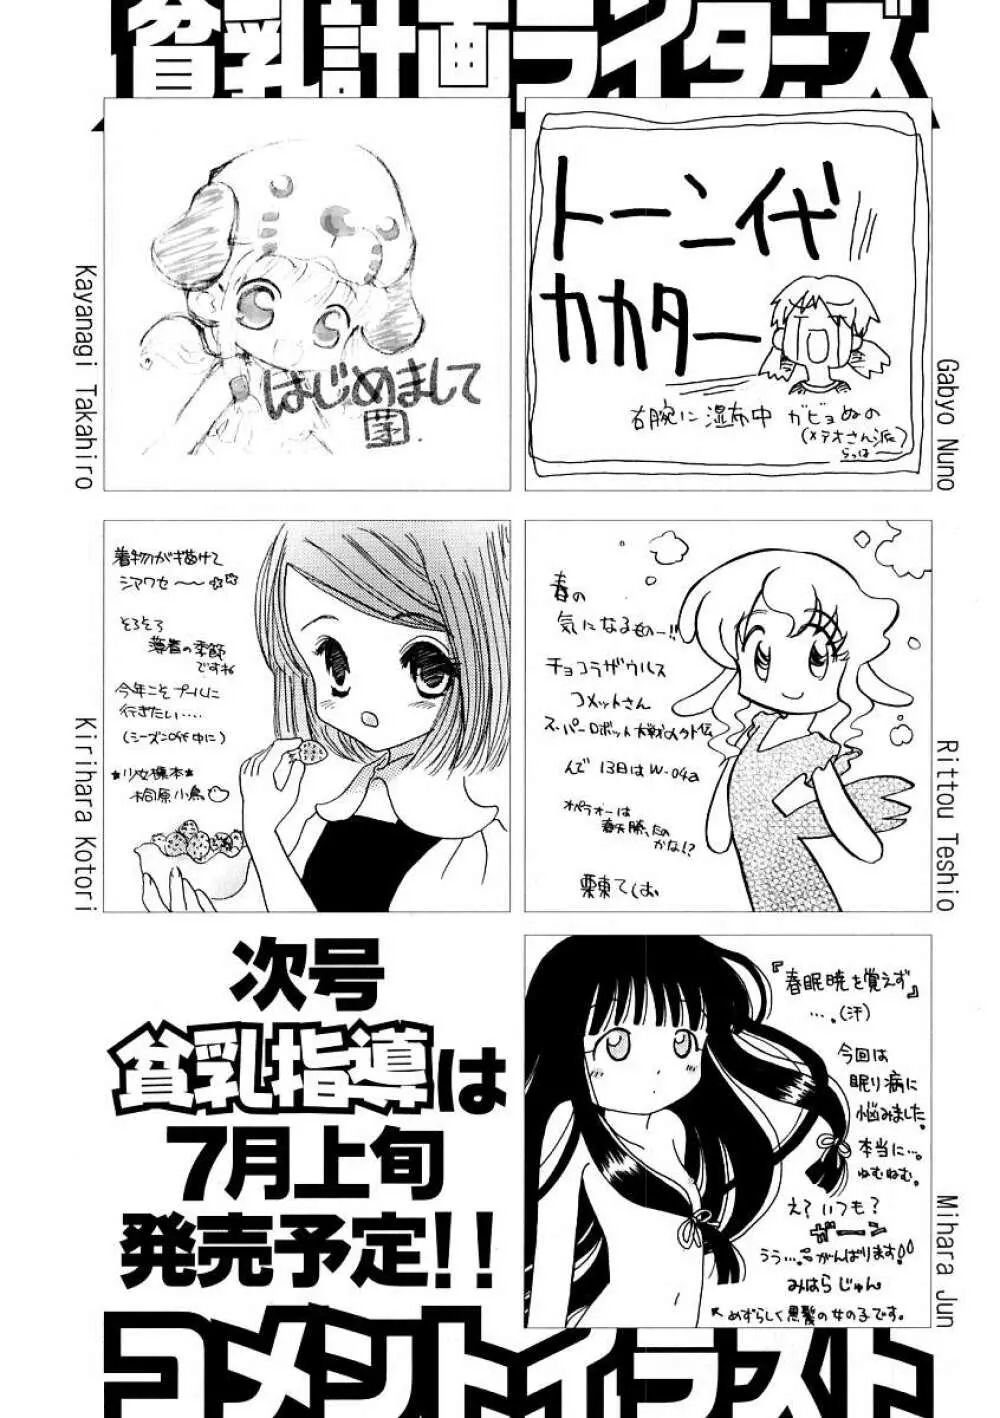 Hin-nyu v09 - Hin-nyu Keikaku Page.148